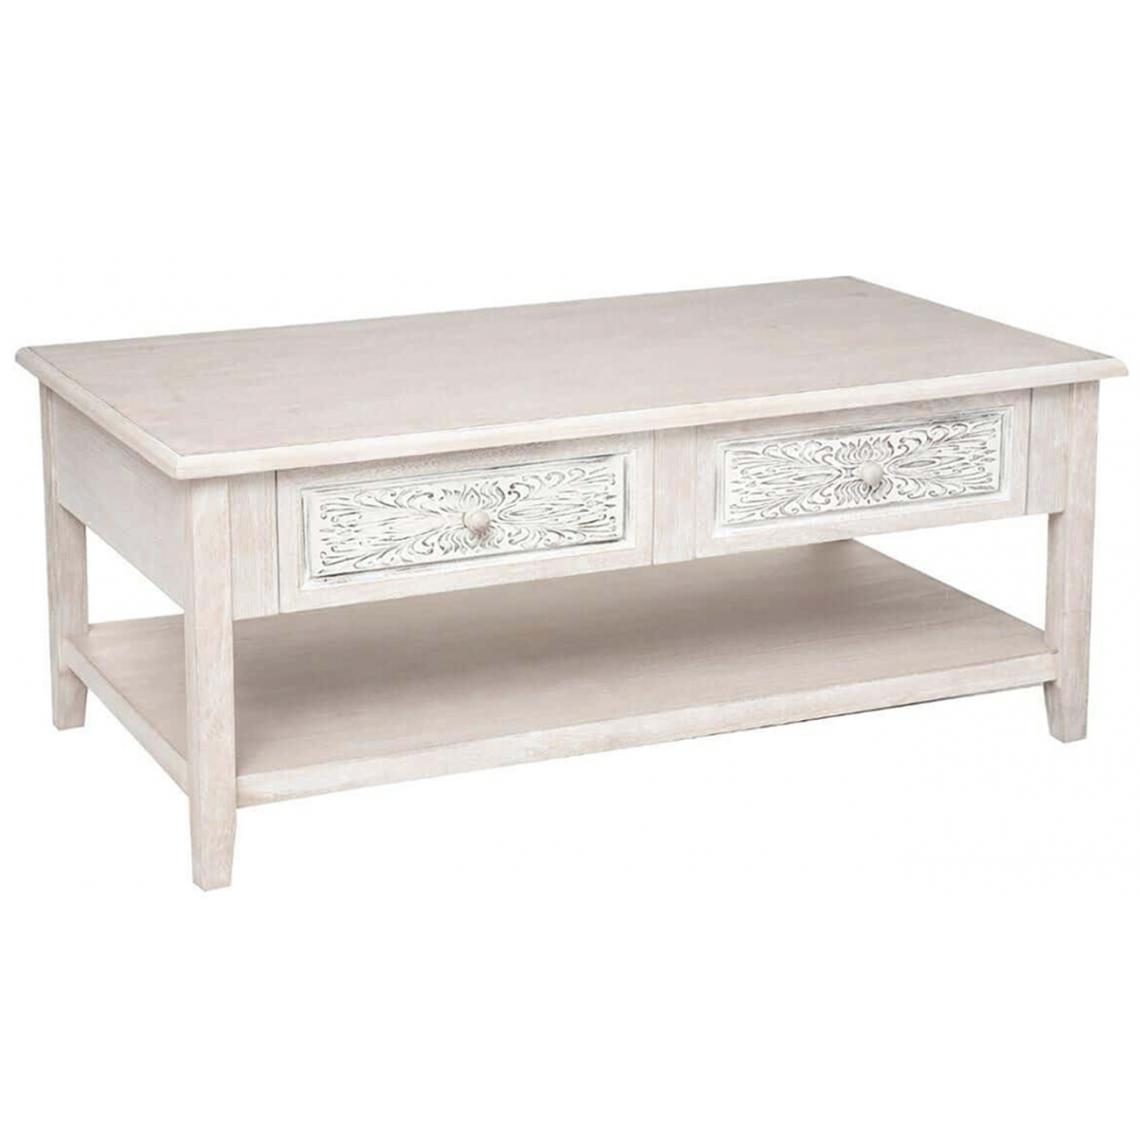 Pegane - Table basse avec rangements coloris beige - Longueur 110 x Profondeur 60 x Hauteur 45 cm - Tables basses